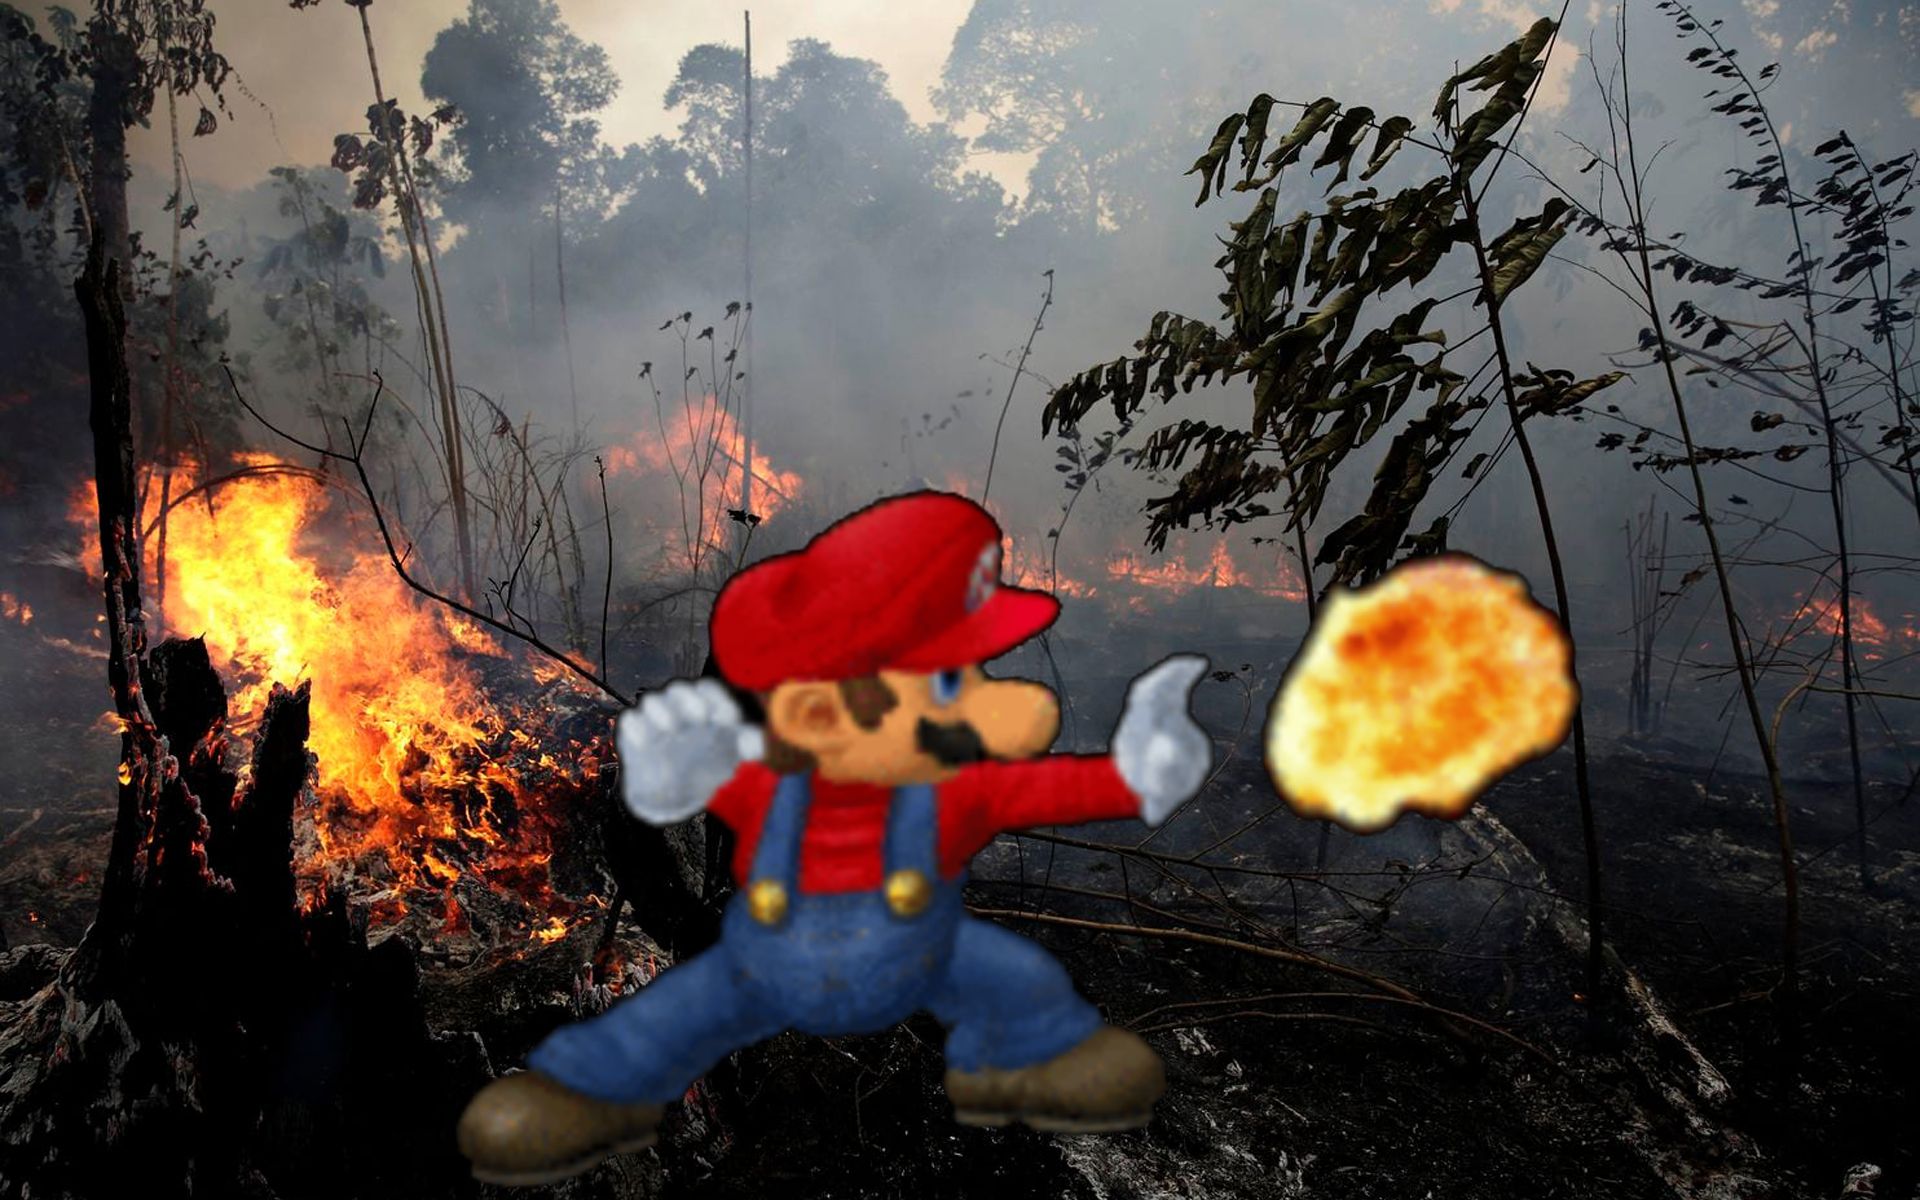 Super Mario: "So Long, Gay Amazon Rainforest!"